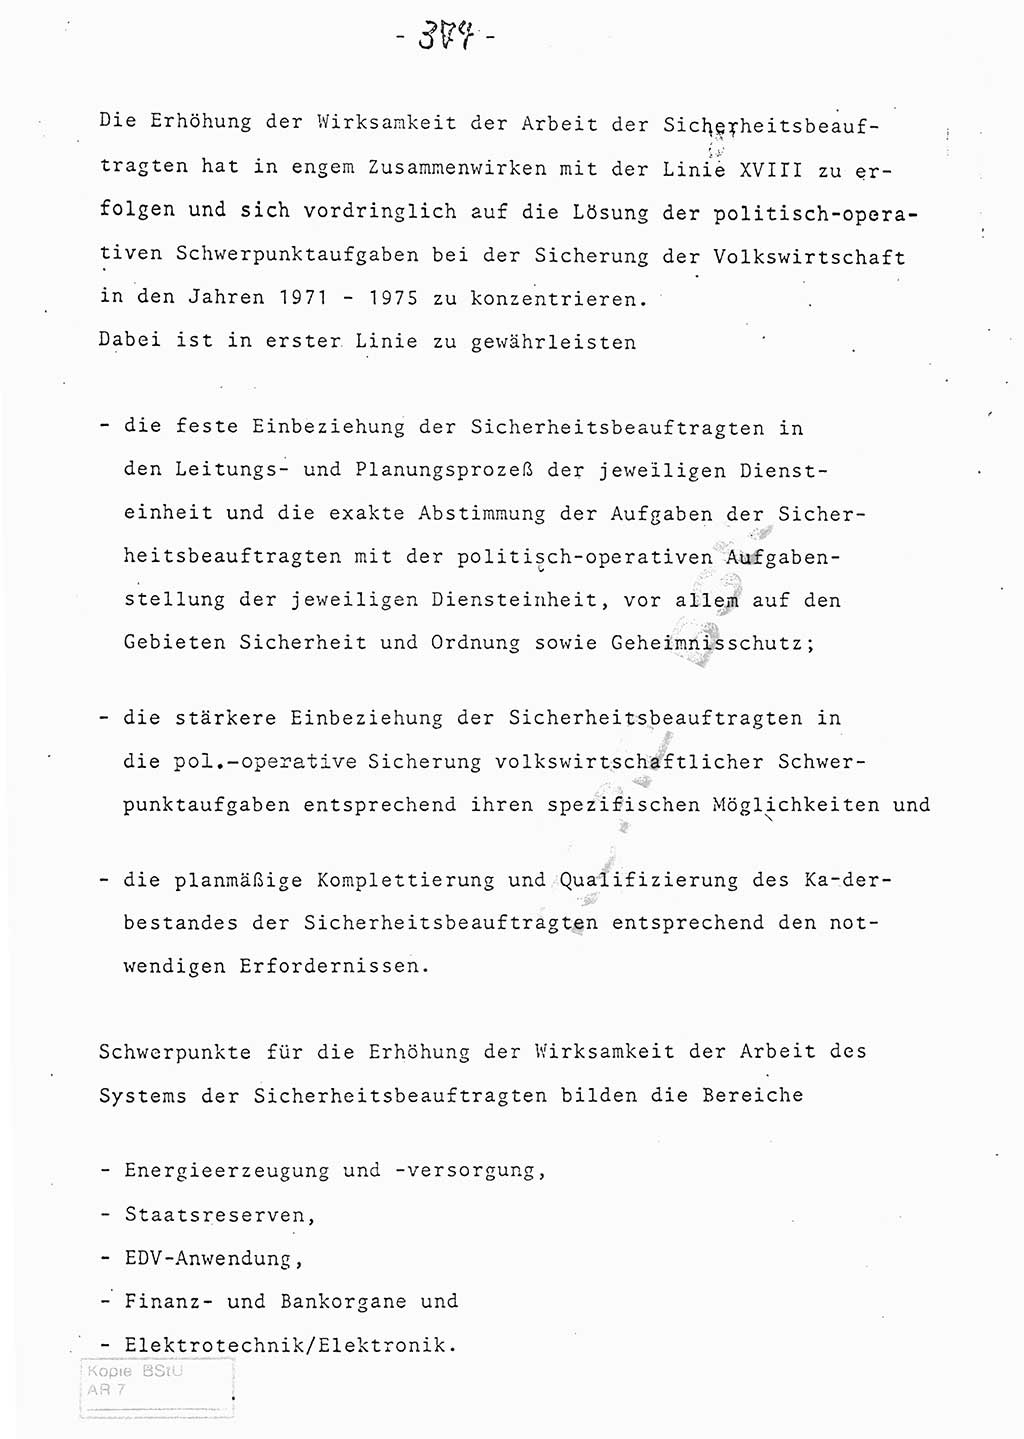 Referat (Entwurf) des Genossen Minister (Generaloberst Erich Mielke) auf der Dienstkonferenz 1972, Ministerium für Staatssicherheit (MfS) [Deutsche Demokratische Republik (DDR)], Der Minister, Geheime Verschlußsache (GVS) 008-150/72, Berlin 25.2.1972, Seite 374 (Ref. Entw. DK MfS DDR Min. GVS 008-150/72 1972, S. 374)